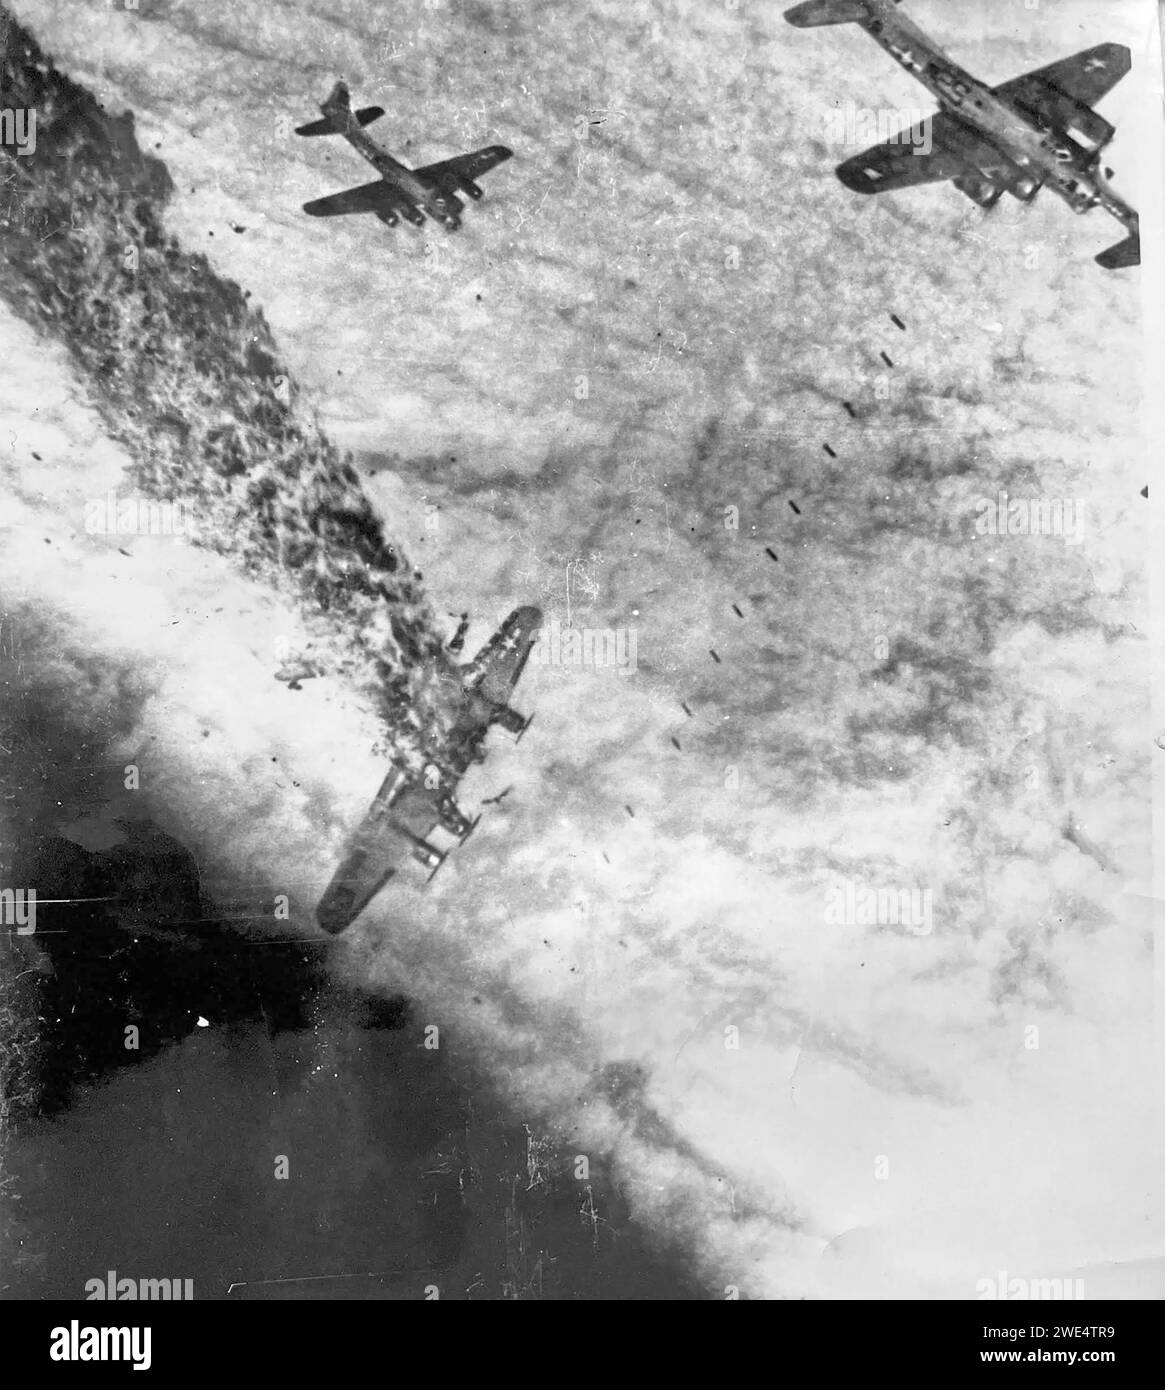 IL BOEING B-17G del 834th Bombardment Squadron USAAF, in volo dalla RAF Sudbury, Inghilterra, subisce un colpo diretto da Flak in una missione sulla Germania il 2 novembre 1944. Gli altri aerei stanno lanciando bombe attraverso le nuvole dopo che l'obiettivo è stato conformato dal bombardiere principale. Foto scattata dal S/Sgt Bill Stewart dalla finestra della vita. Foto Stock